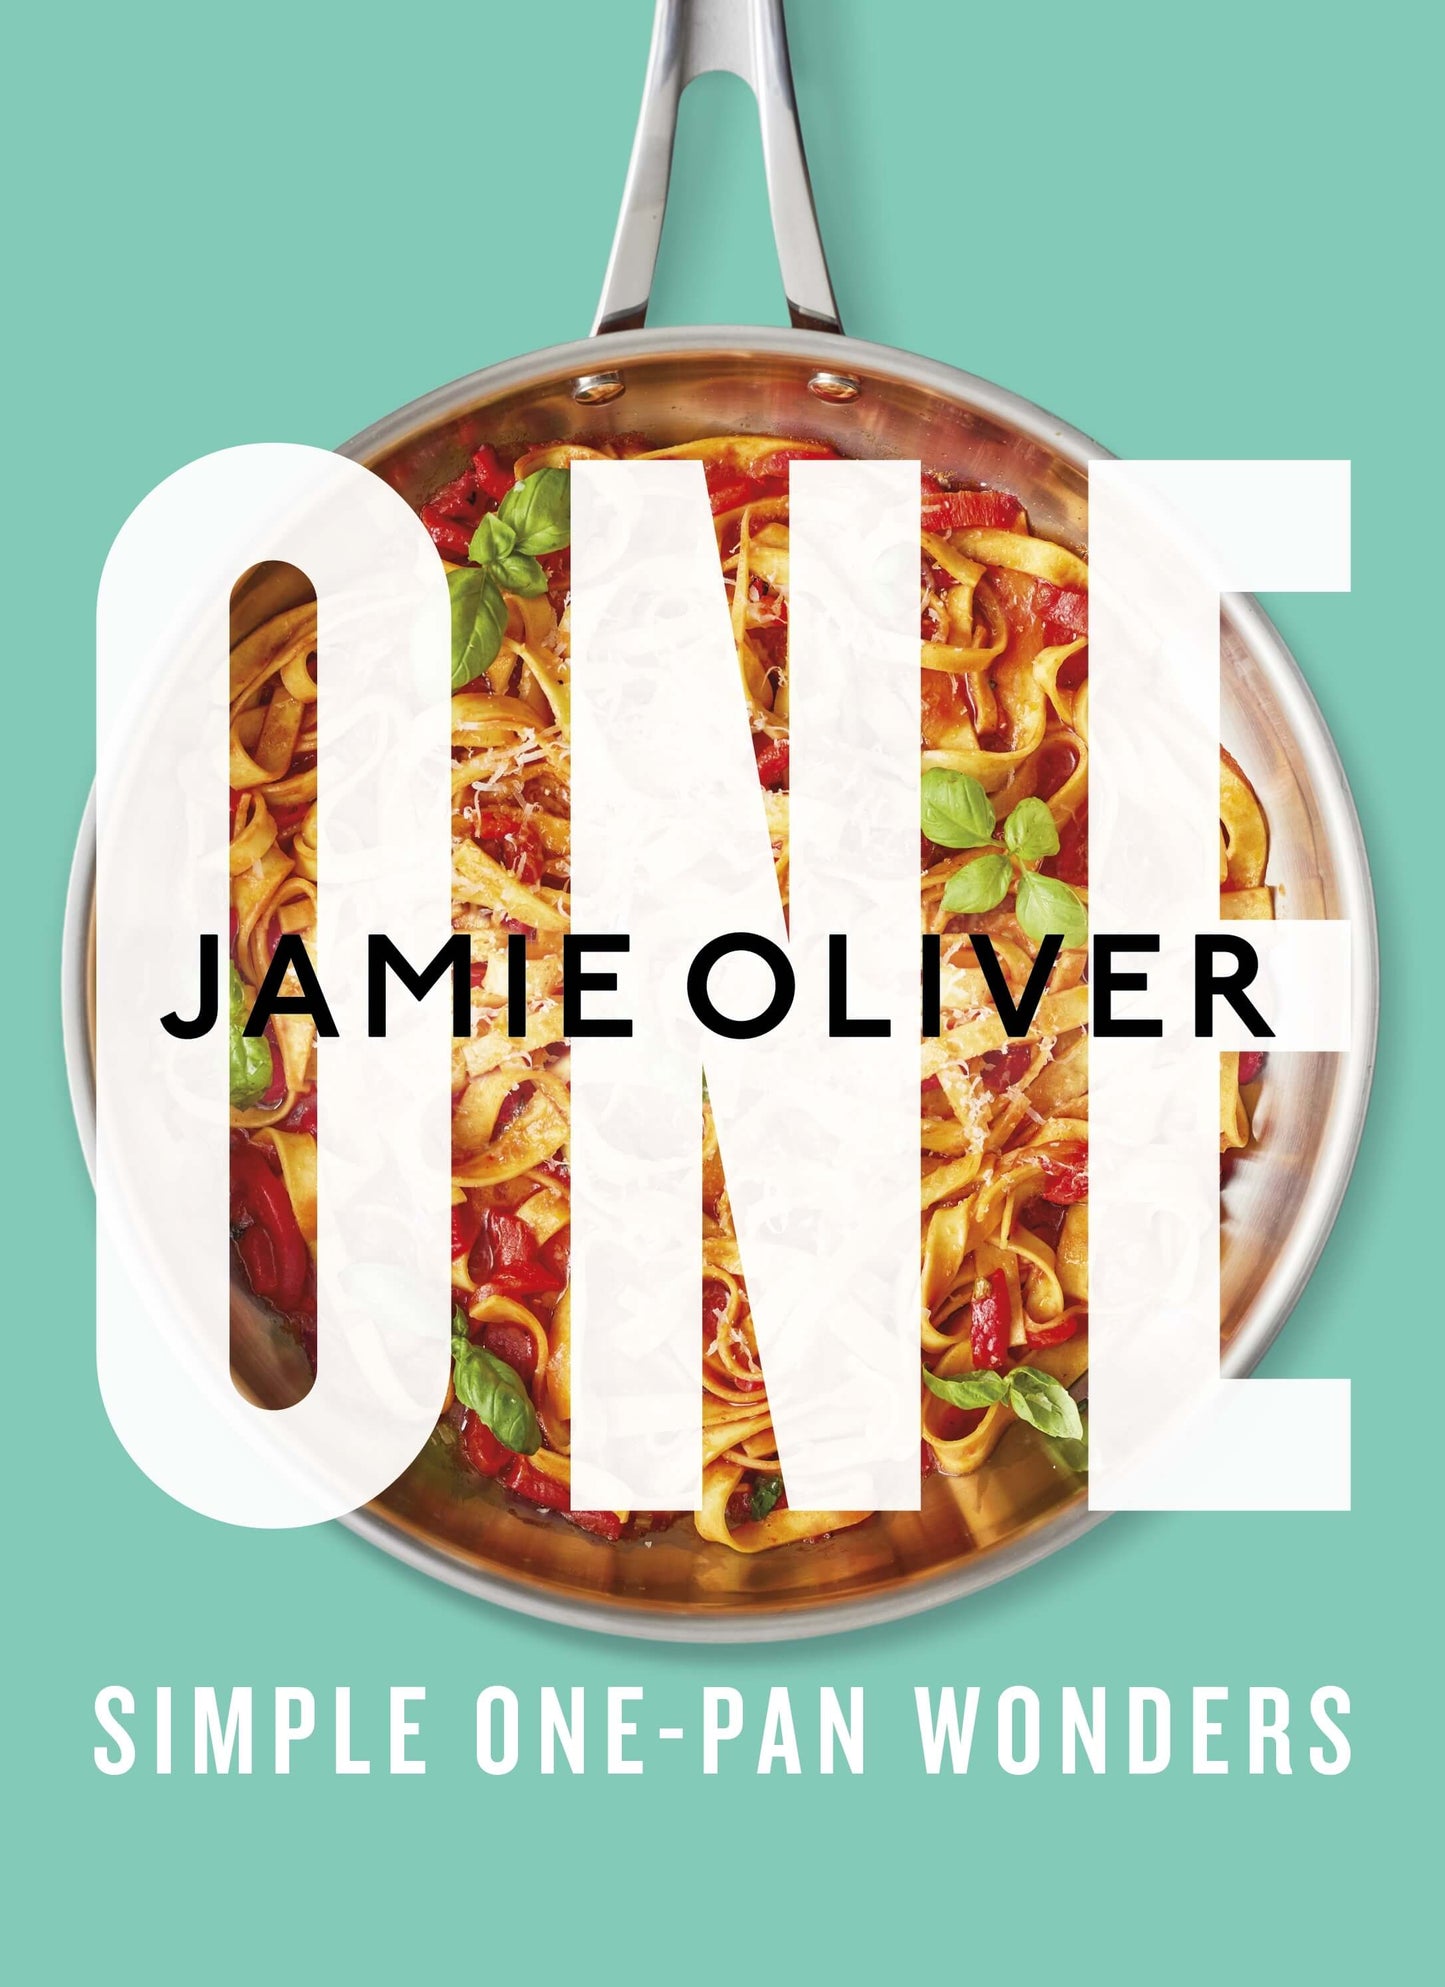 One Simple One Pan Wonders Jamie Oliver